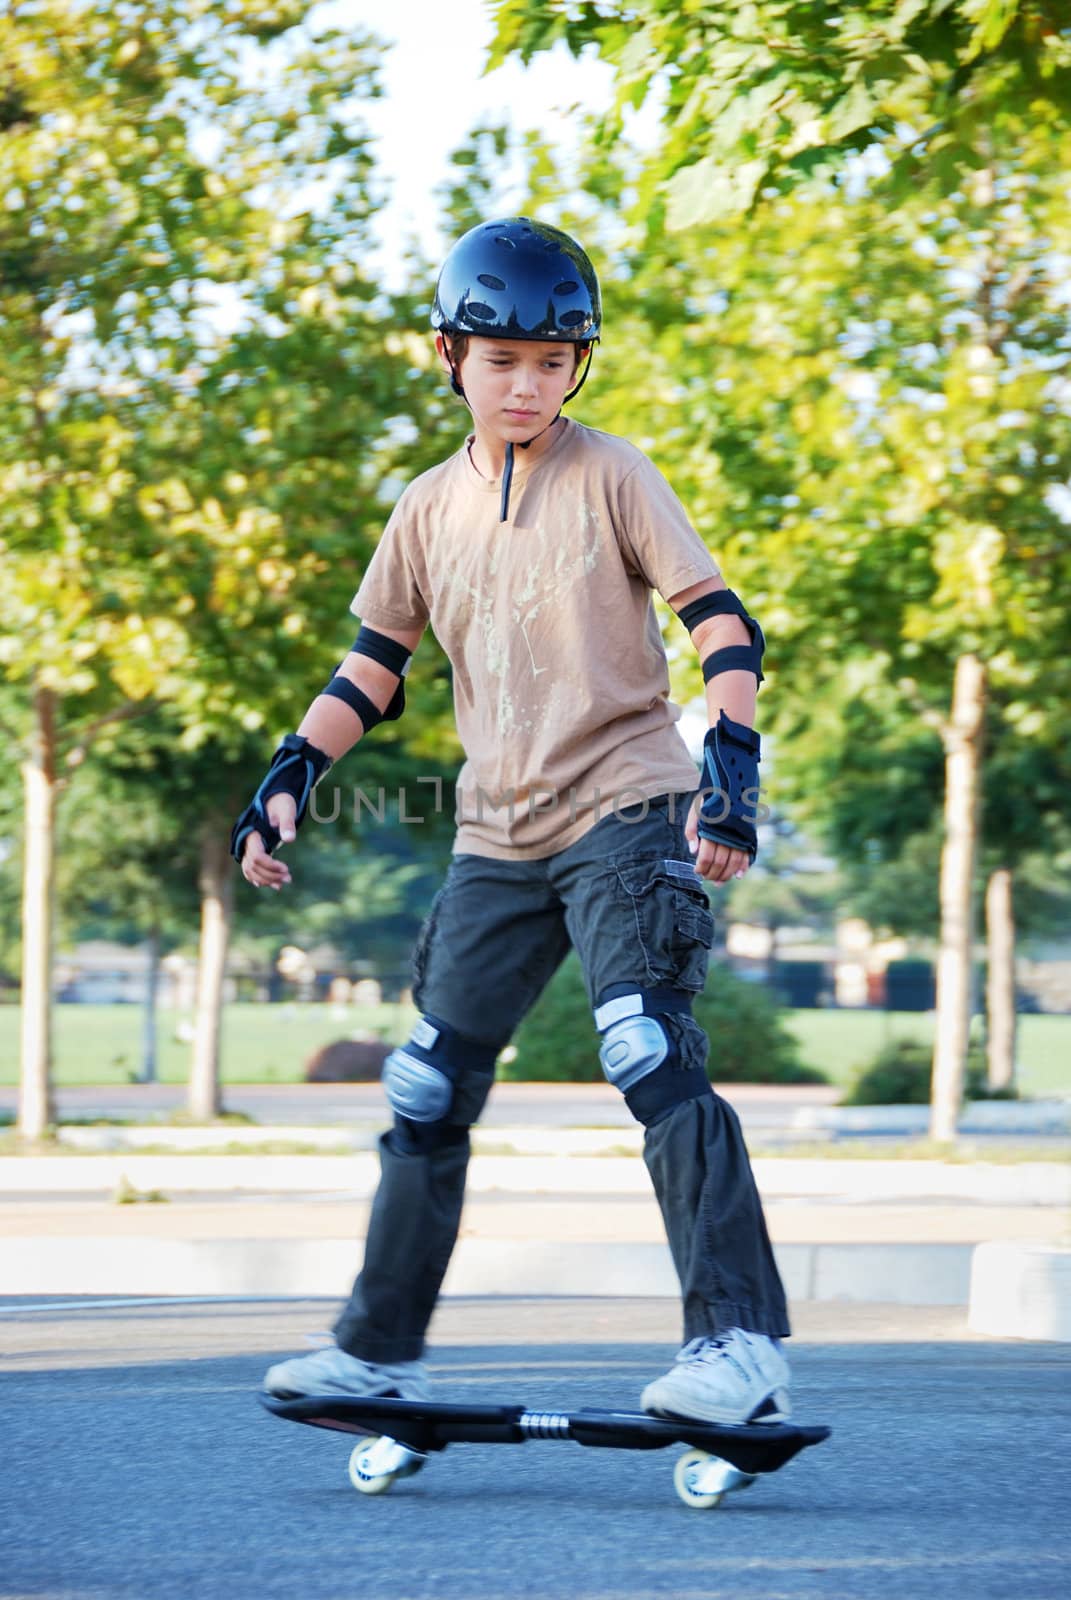 Teenage Boy Riding Skateboard by goldenangel